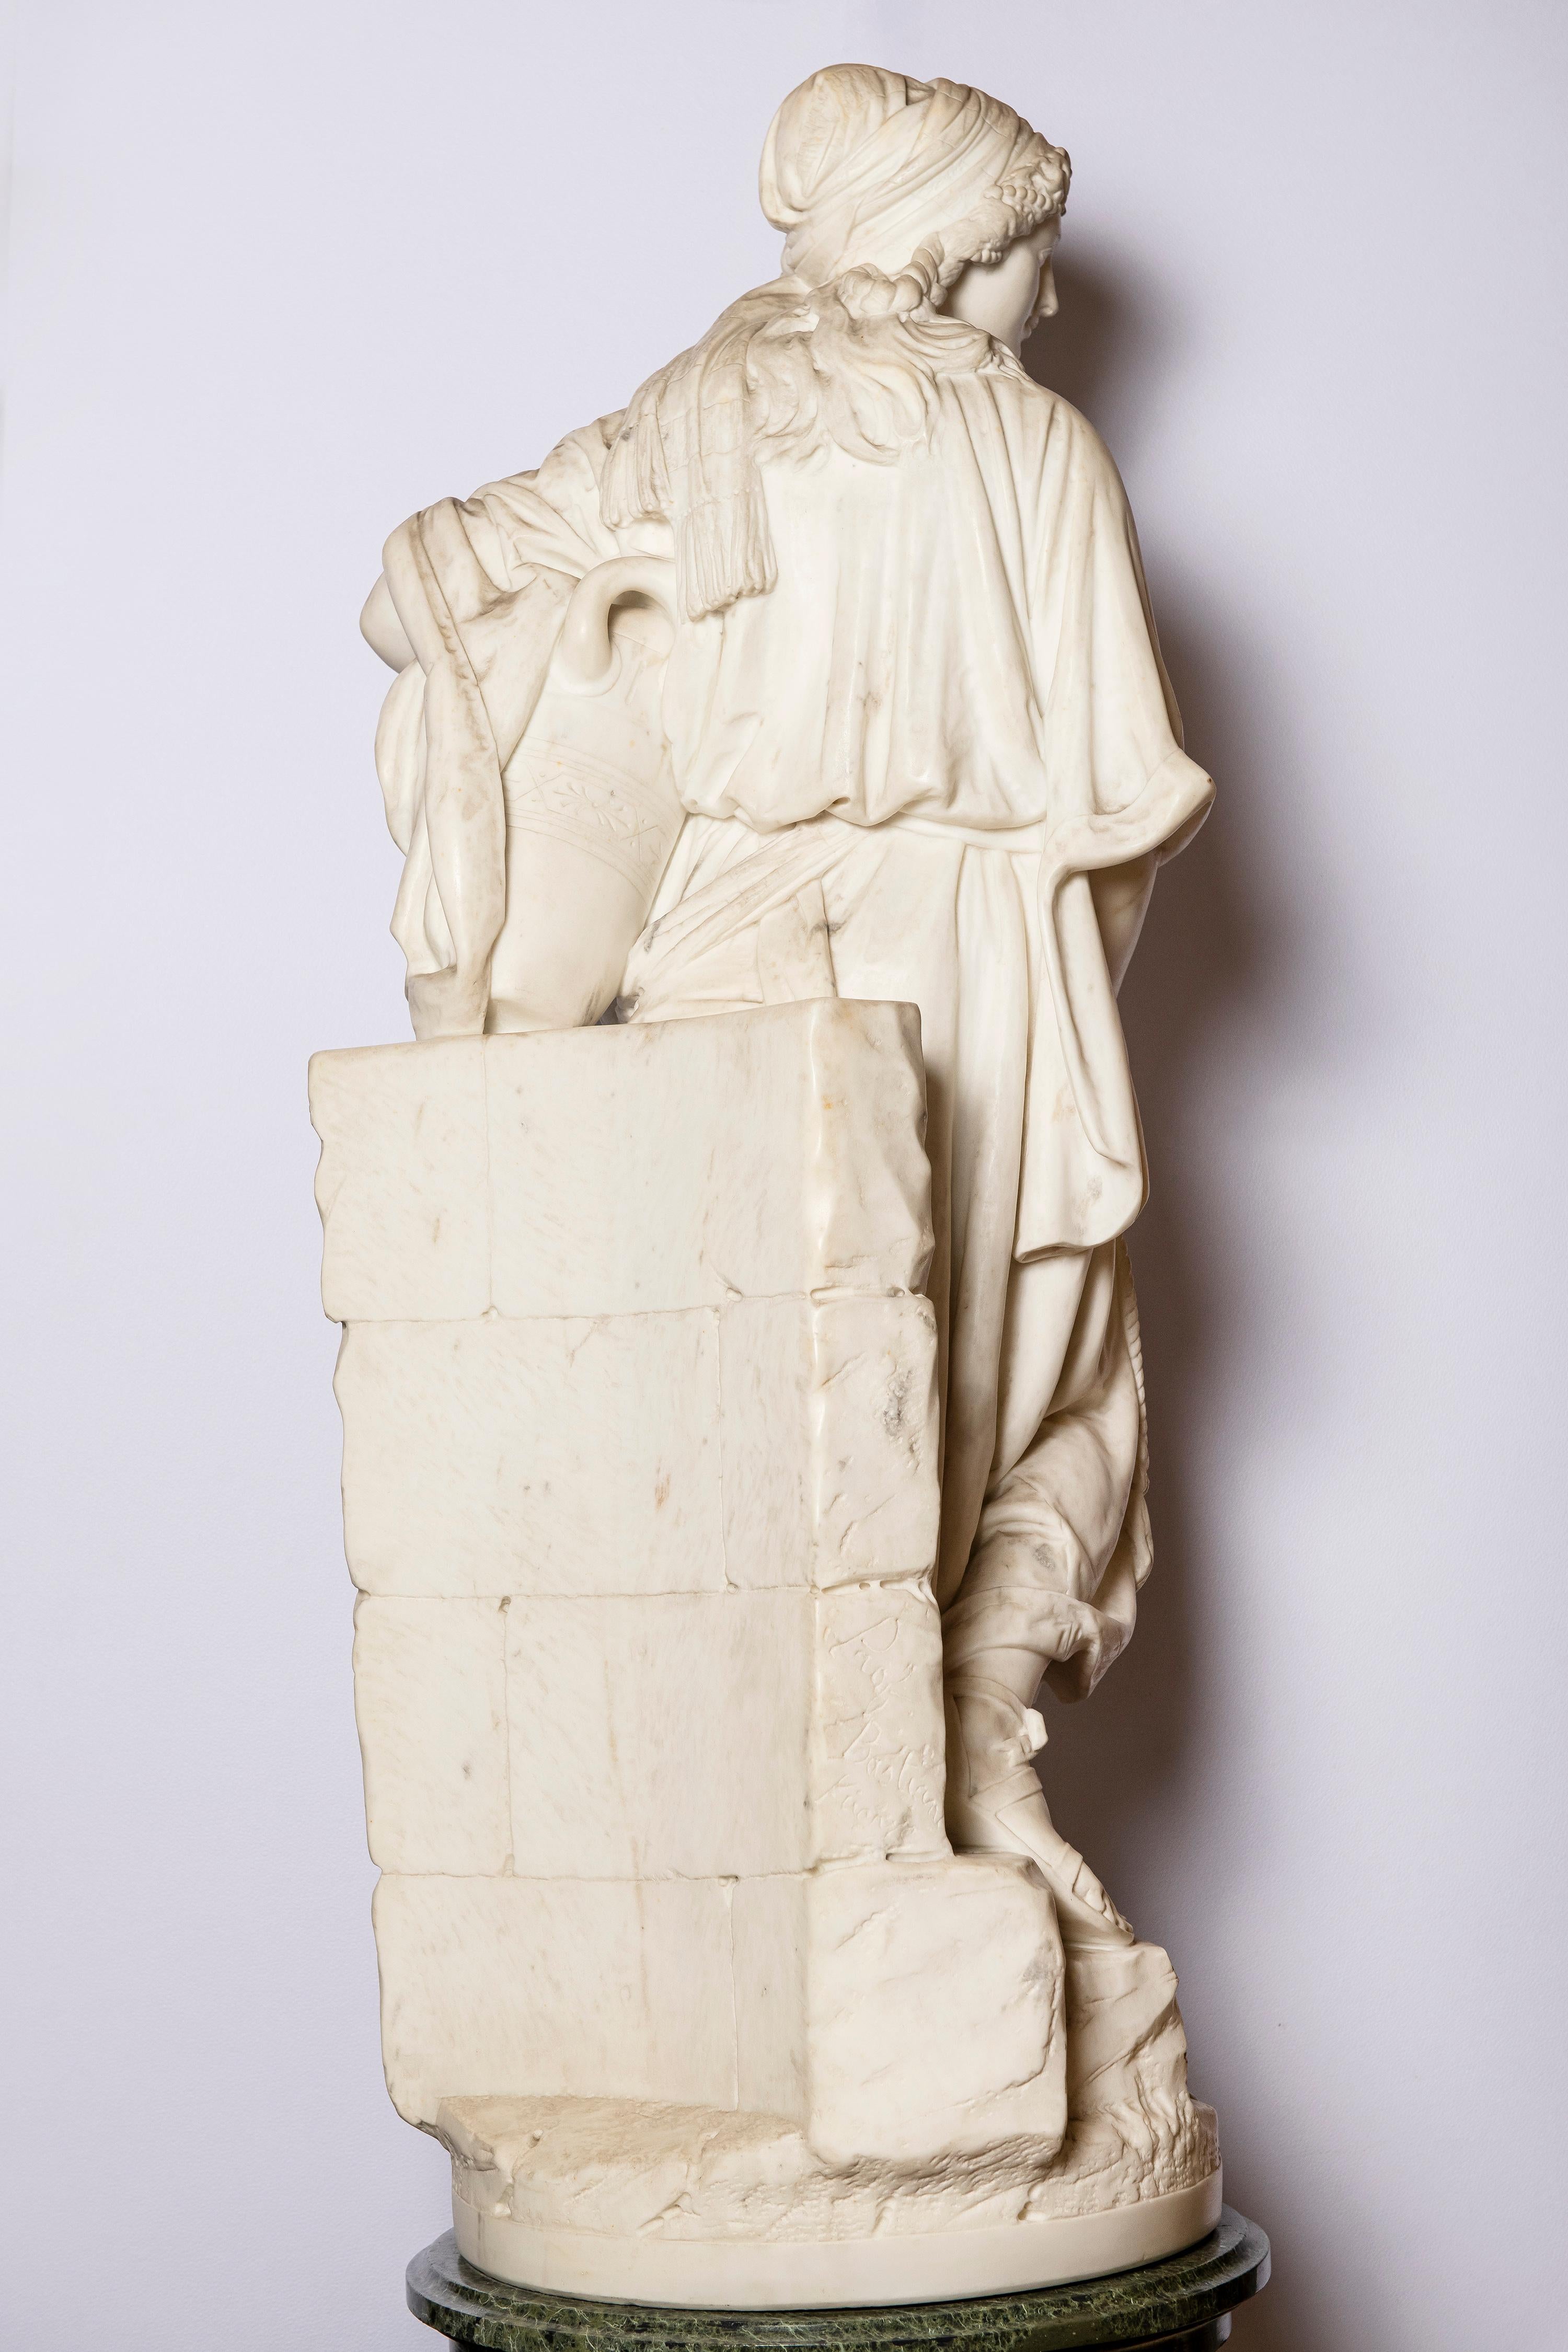 Skulptur aus Carrara-Marmor, signiert Prof. Bastiani Florenz, Italien, um 1890. 
Von Ildebrando Bastiani.